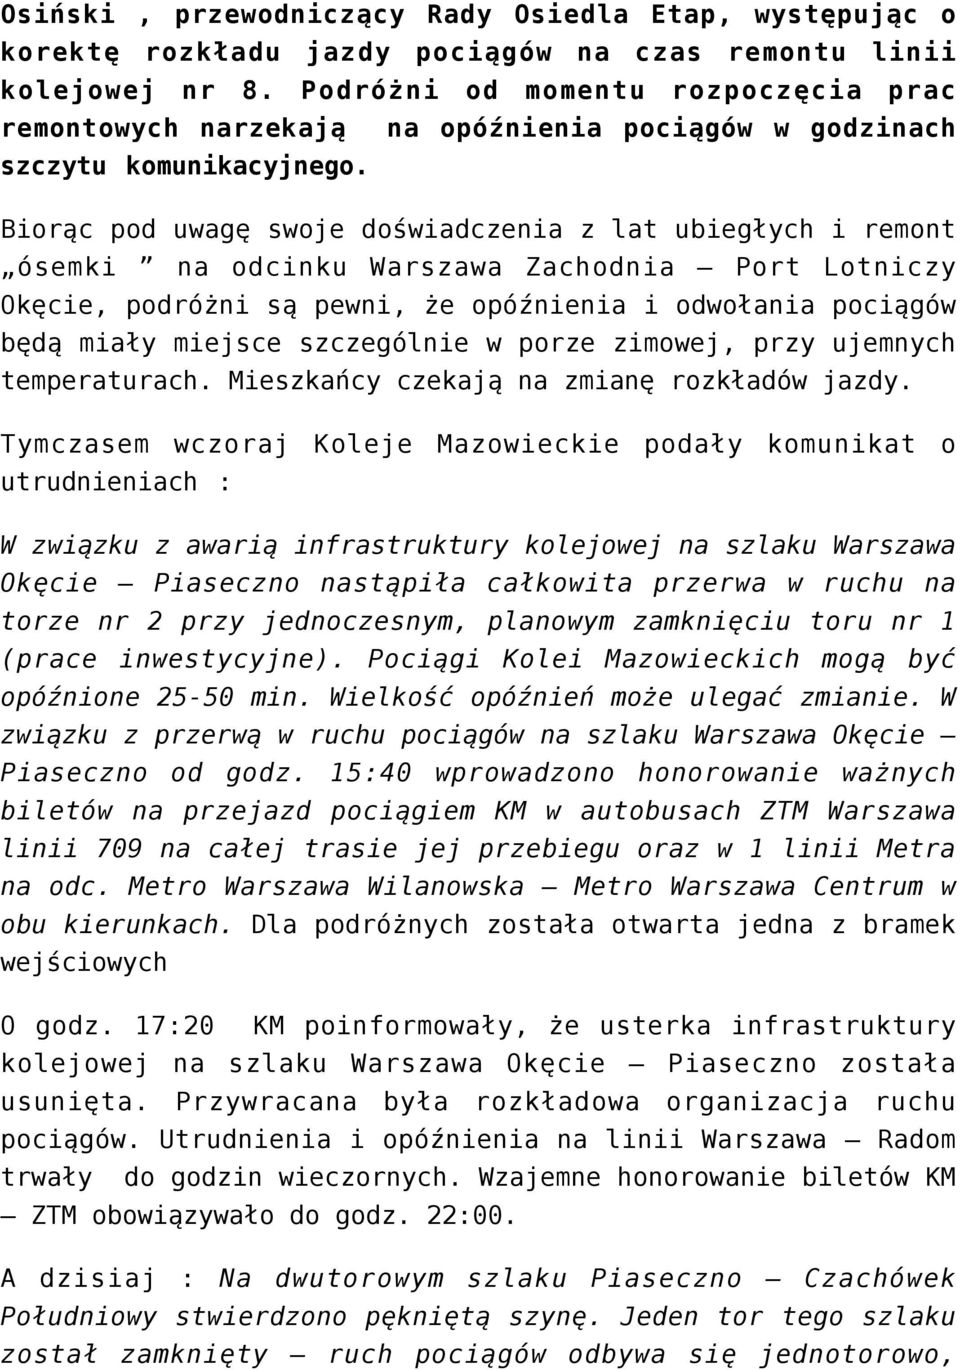 Biorąc pod uwagę swoje doświadczenia z lat ubiegłych i remont ósemki na odcinku Warszawa Zachodnia Port Lotniczy Okęcie, podróżni są pewni, że opóźnienia i odwołania pociągów będą miały miejsce